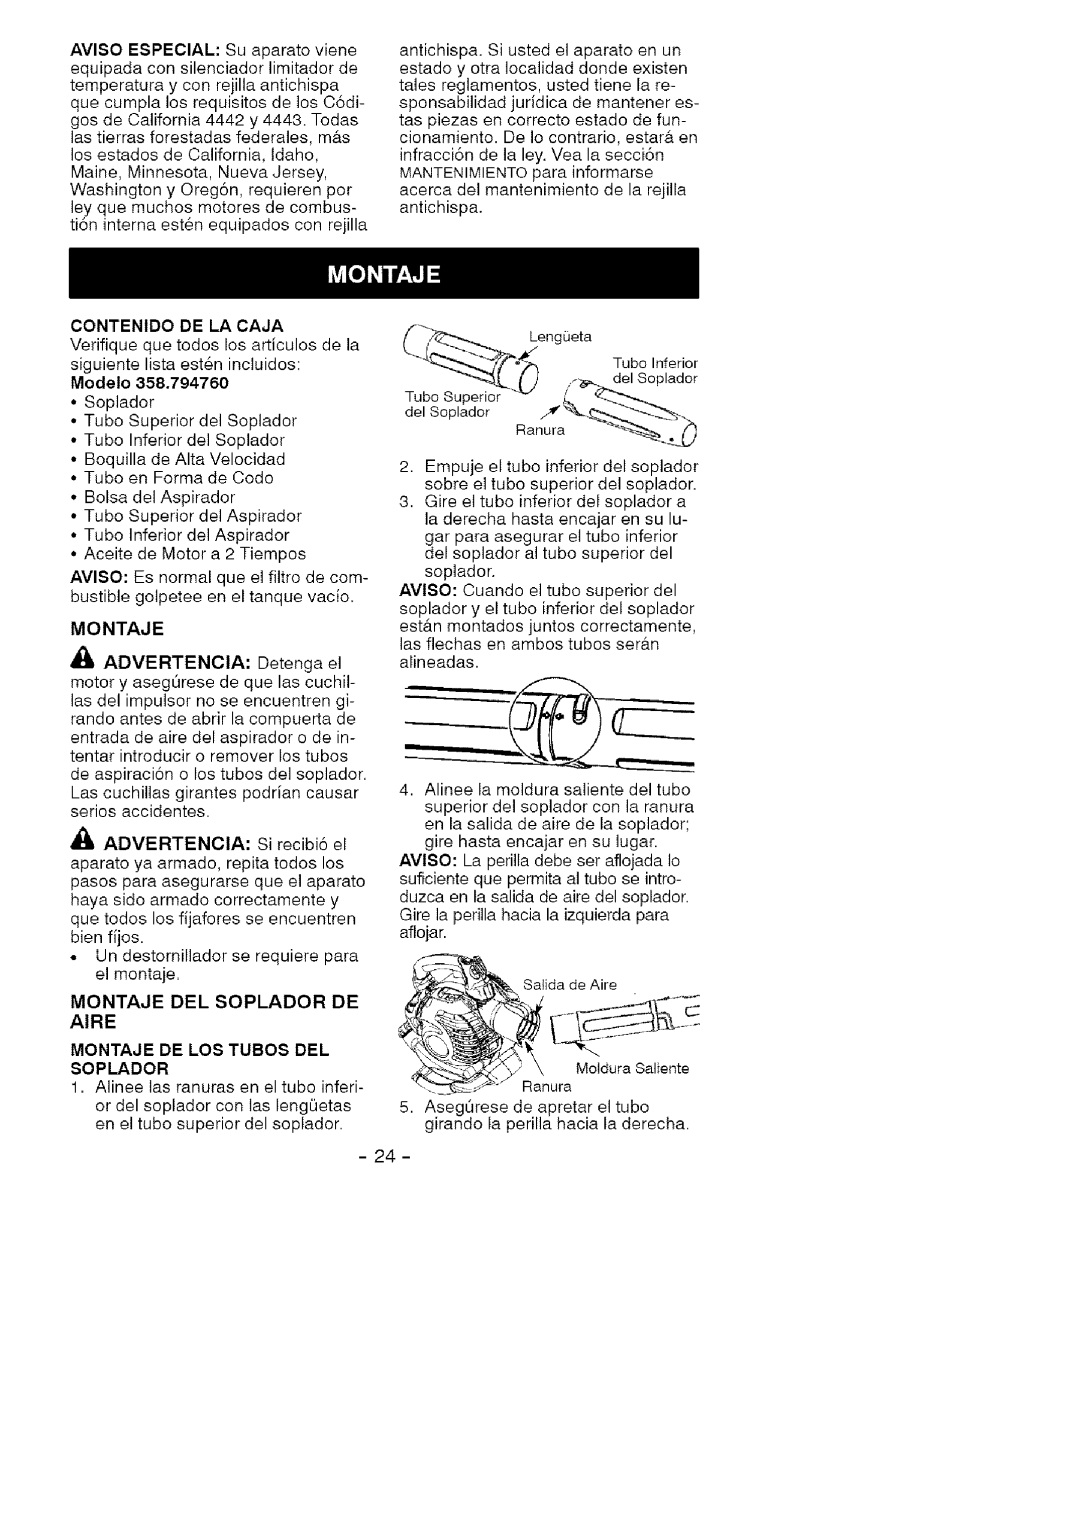 Craftsman 358.79476 manual Modelo, Montaje De Los Tubos Del Soplador 